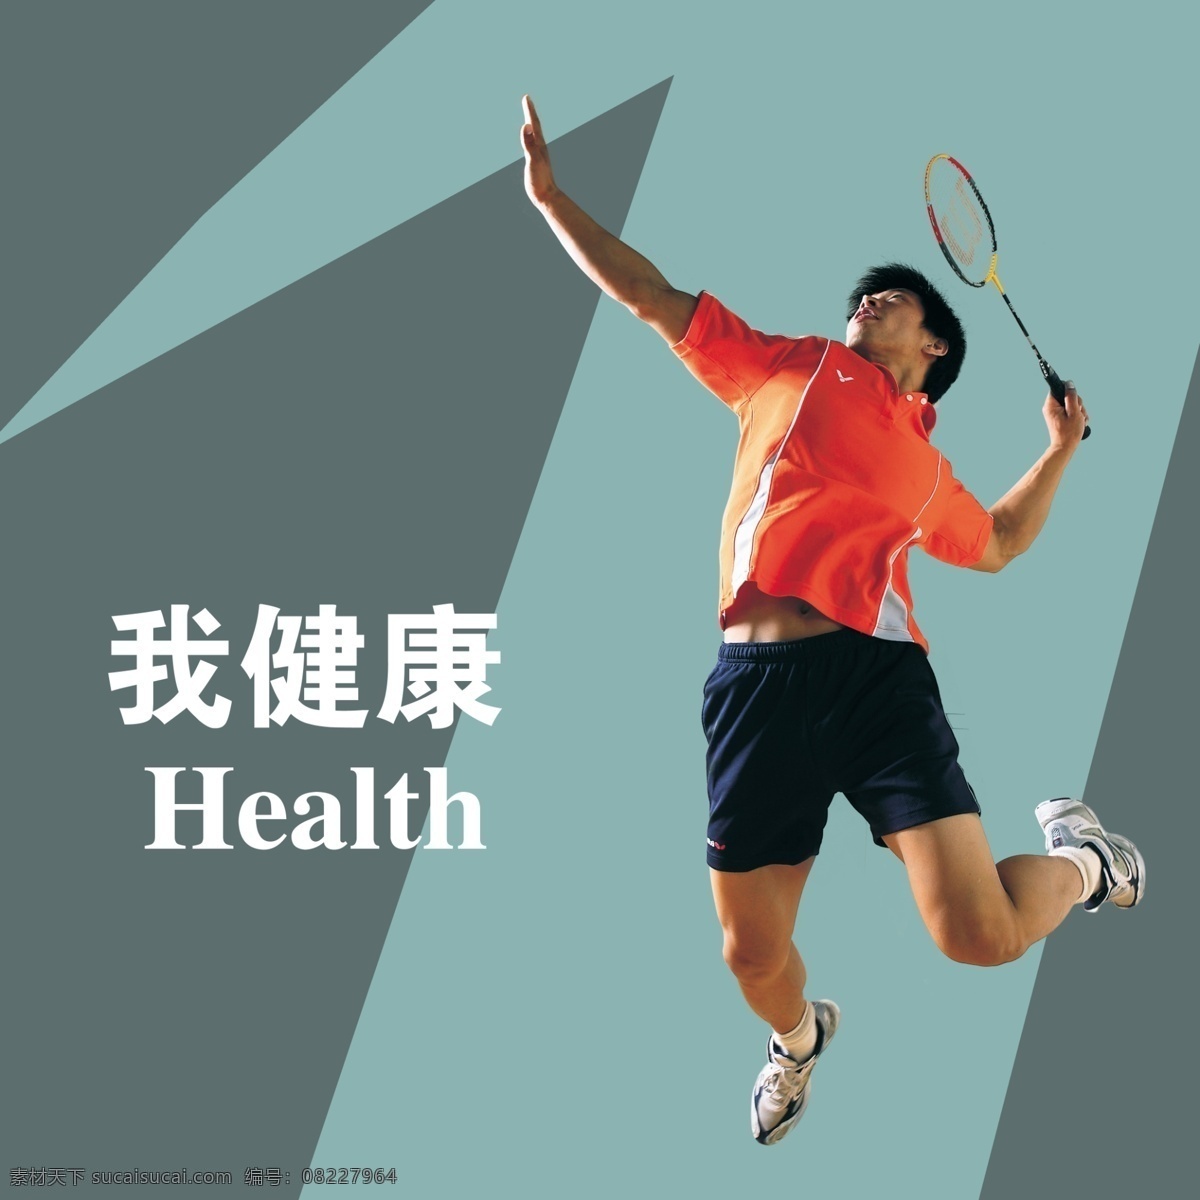 羽毛球运动员 我健康 运动员 羽毛球拍 展板模板 广告设计模板 源文件